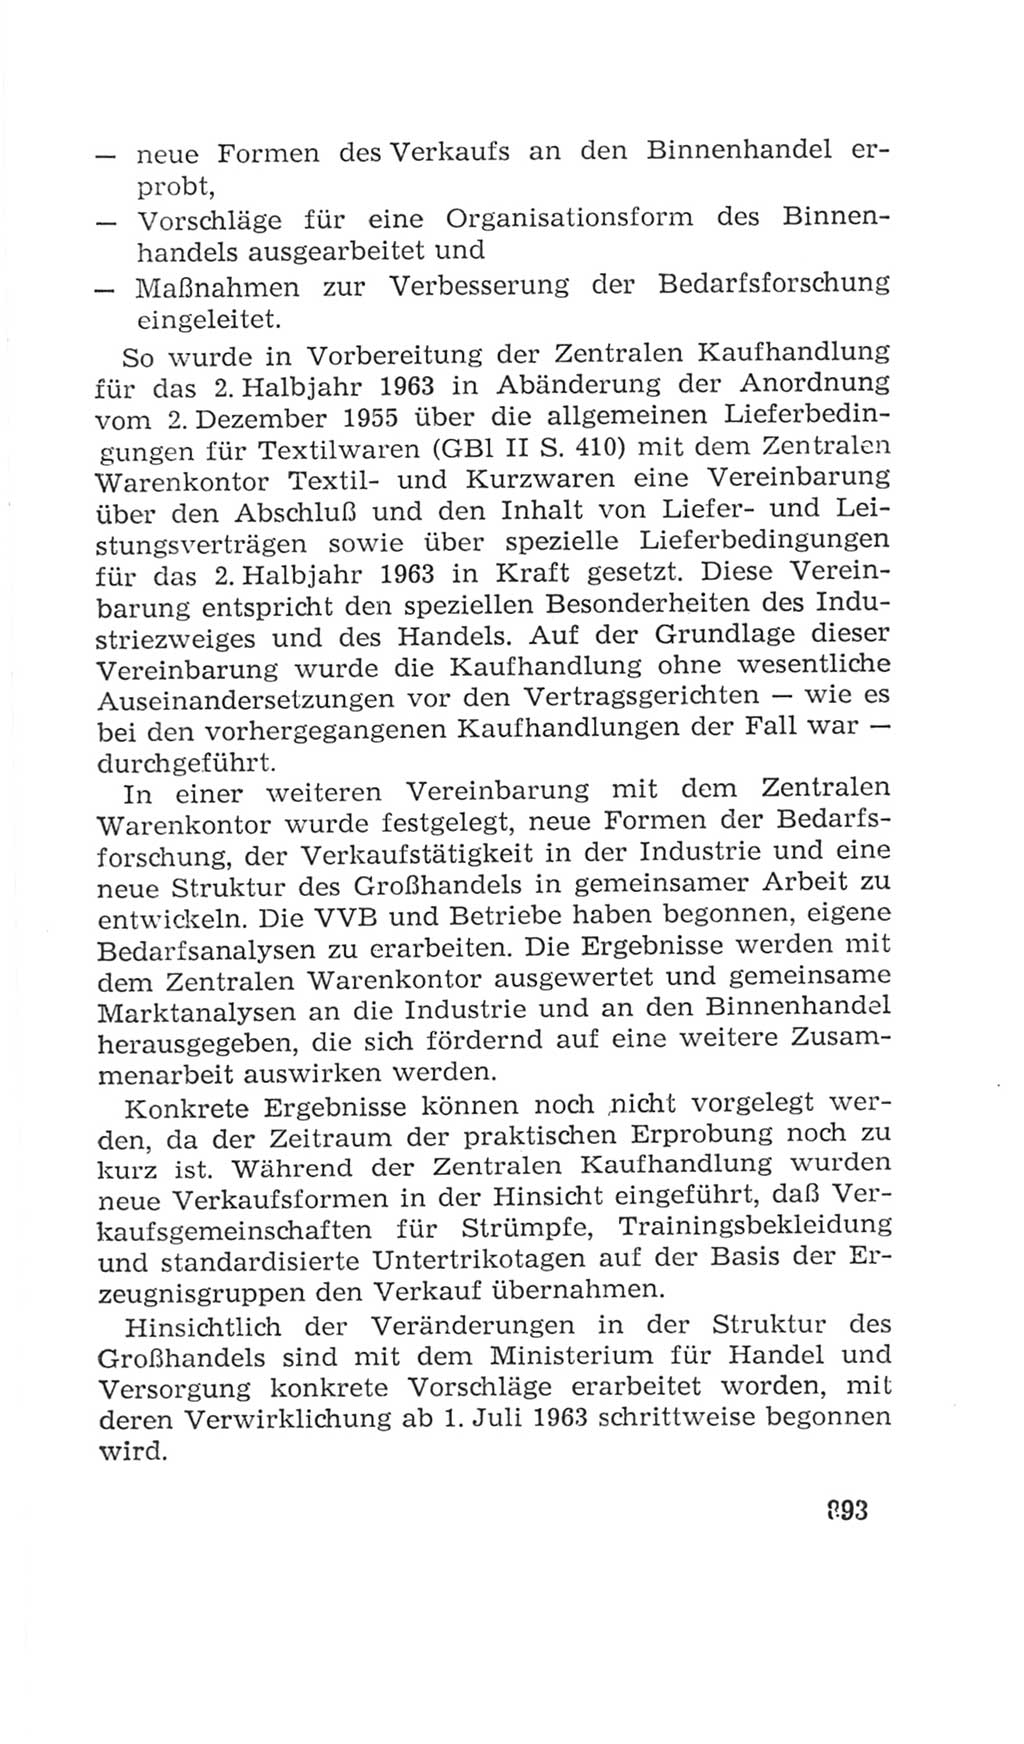 Volkskammer (VK) der Deutschen Demokratischen Republik (DDR), 4. Wahlperiode 1963-1967, Seite 893 (VK. DDR 4. WP. 1963-1967, S. 893)